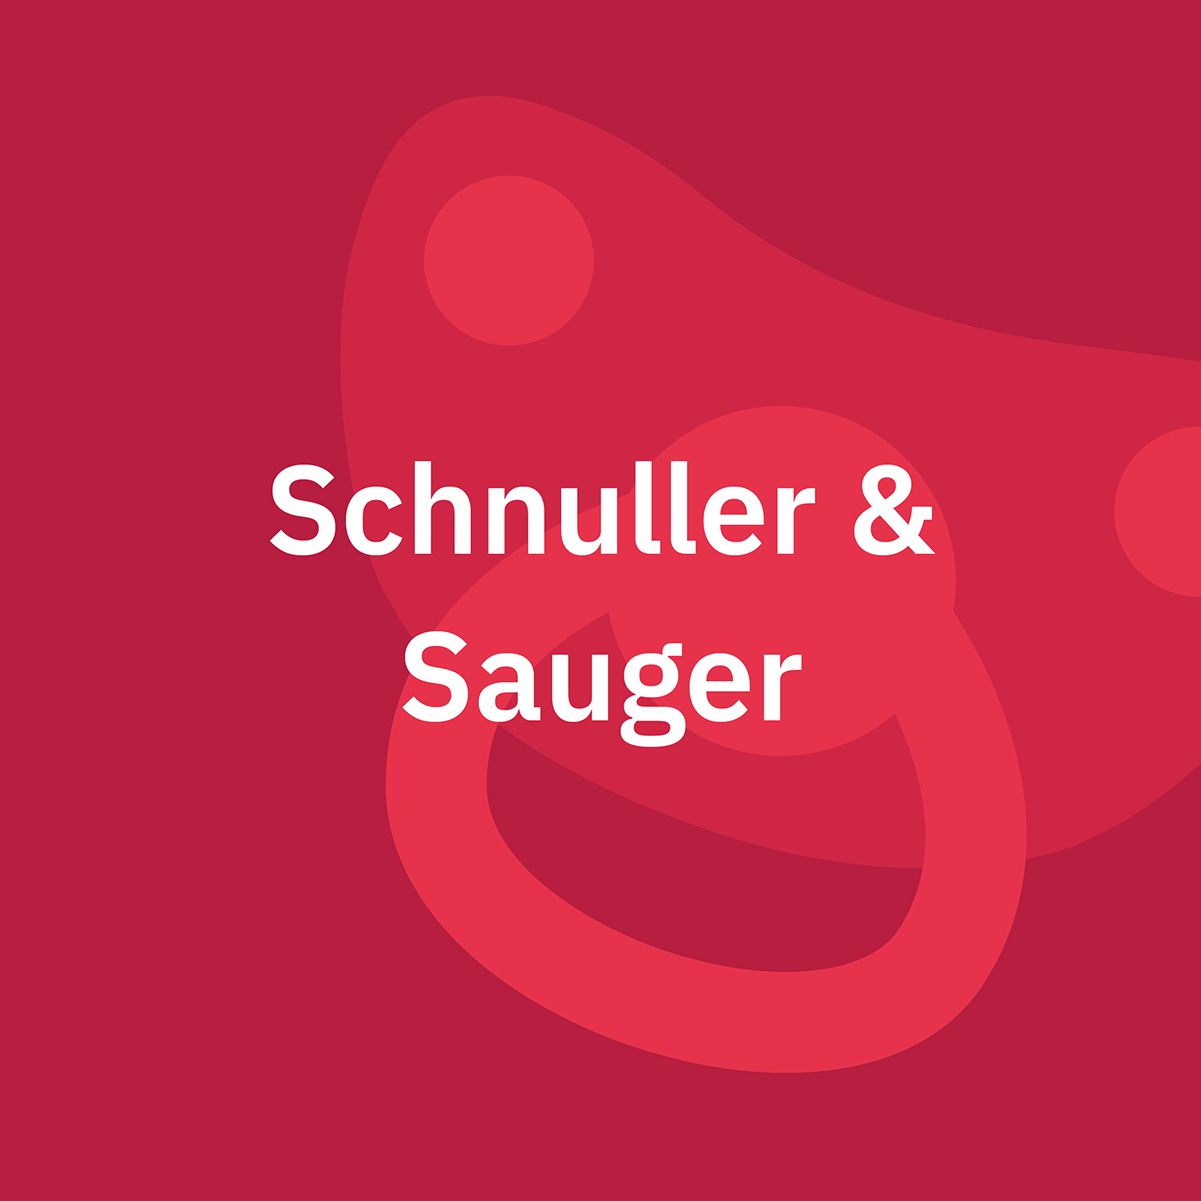 Schnuller, Sauger & Zubehör